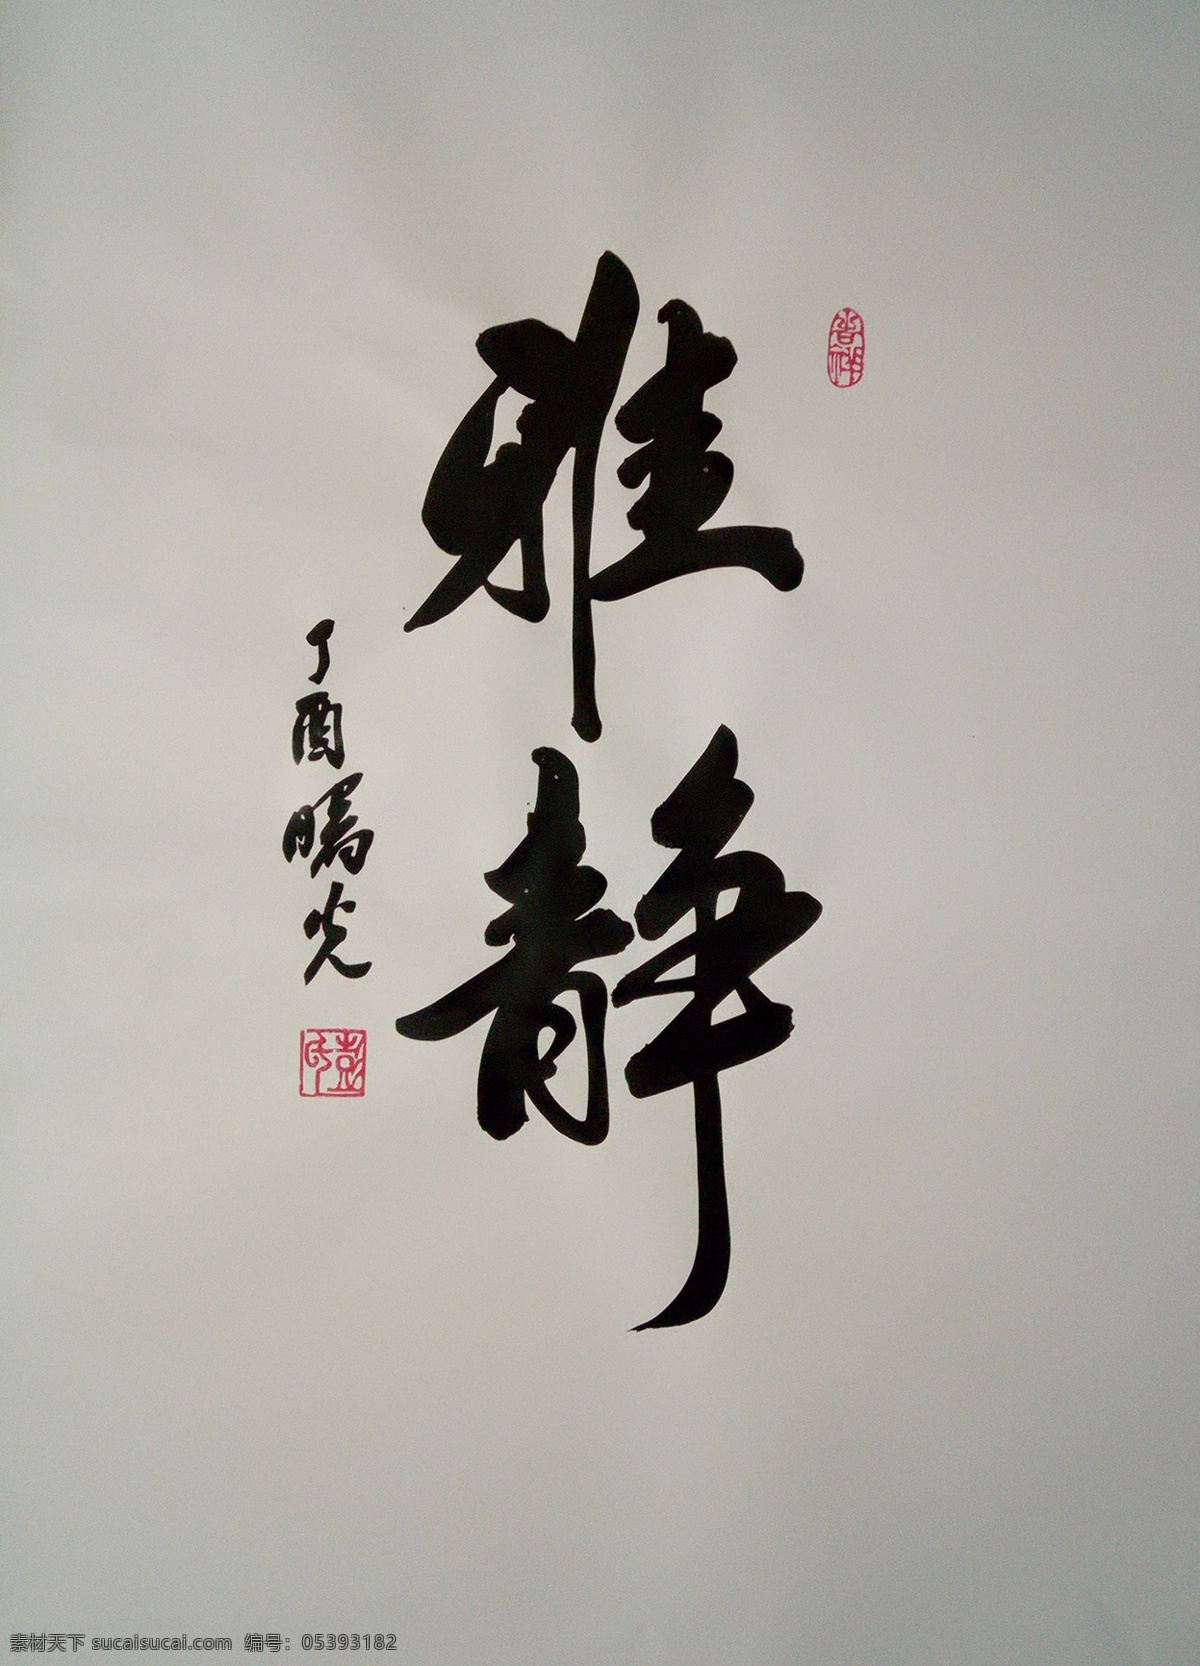 雅兰 雅静 彭曙光书法 书法 雅字 文化艺术 传统文化